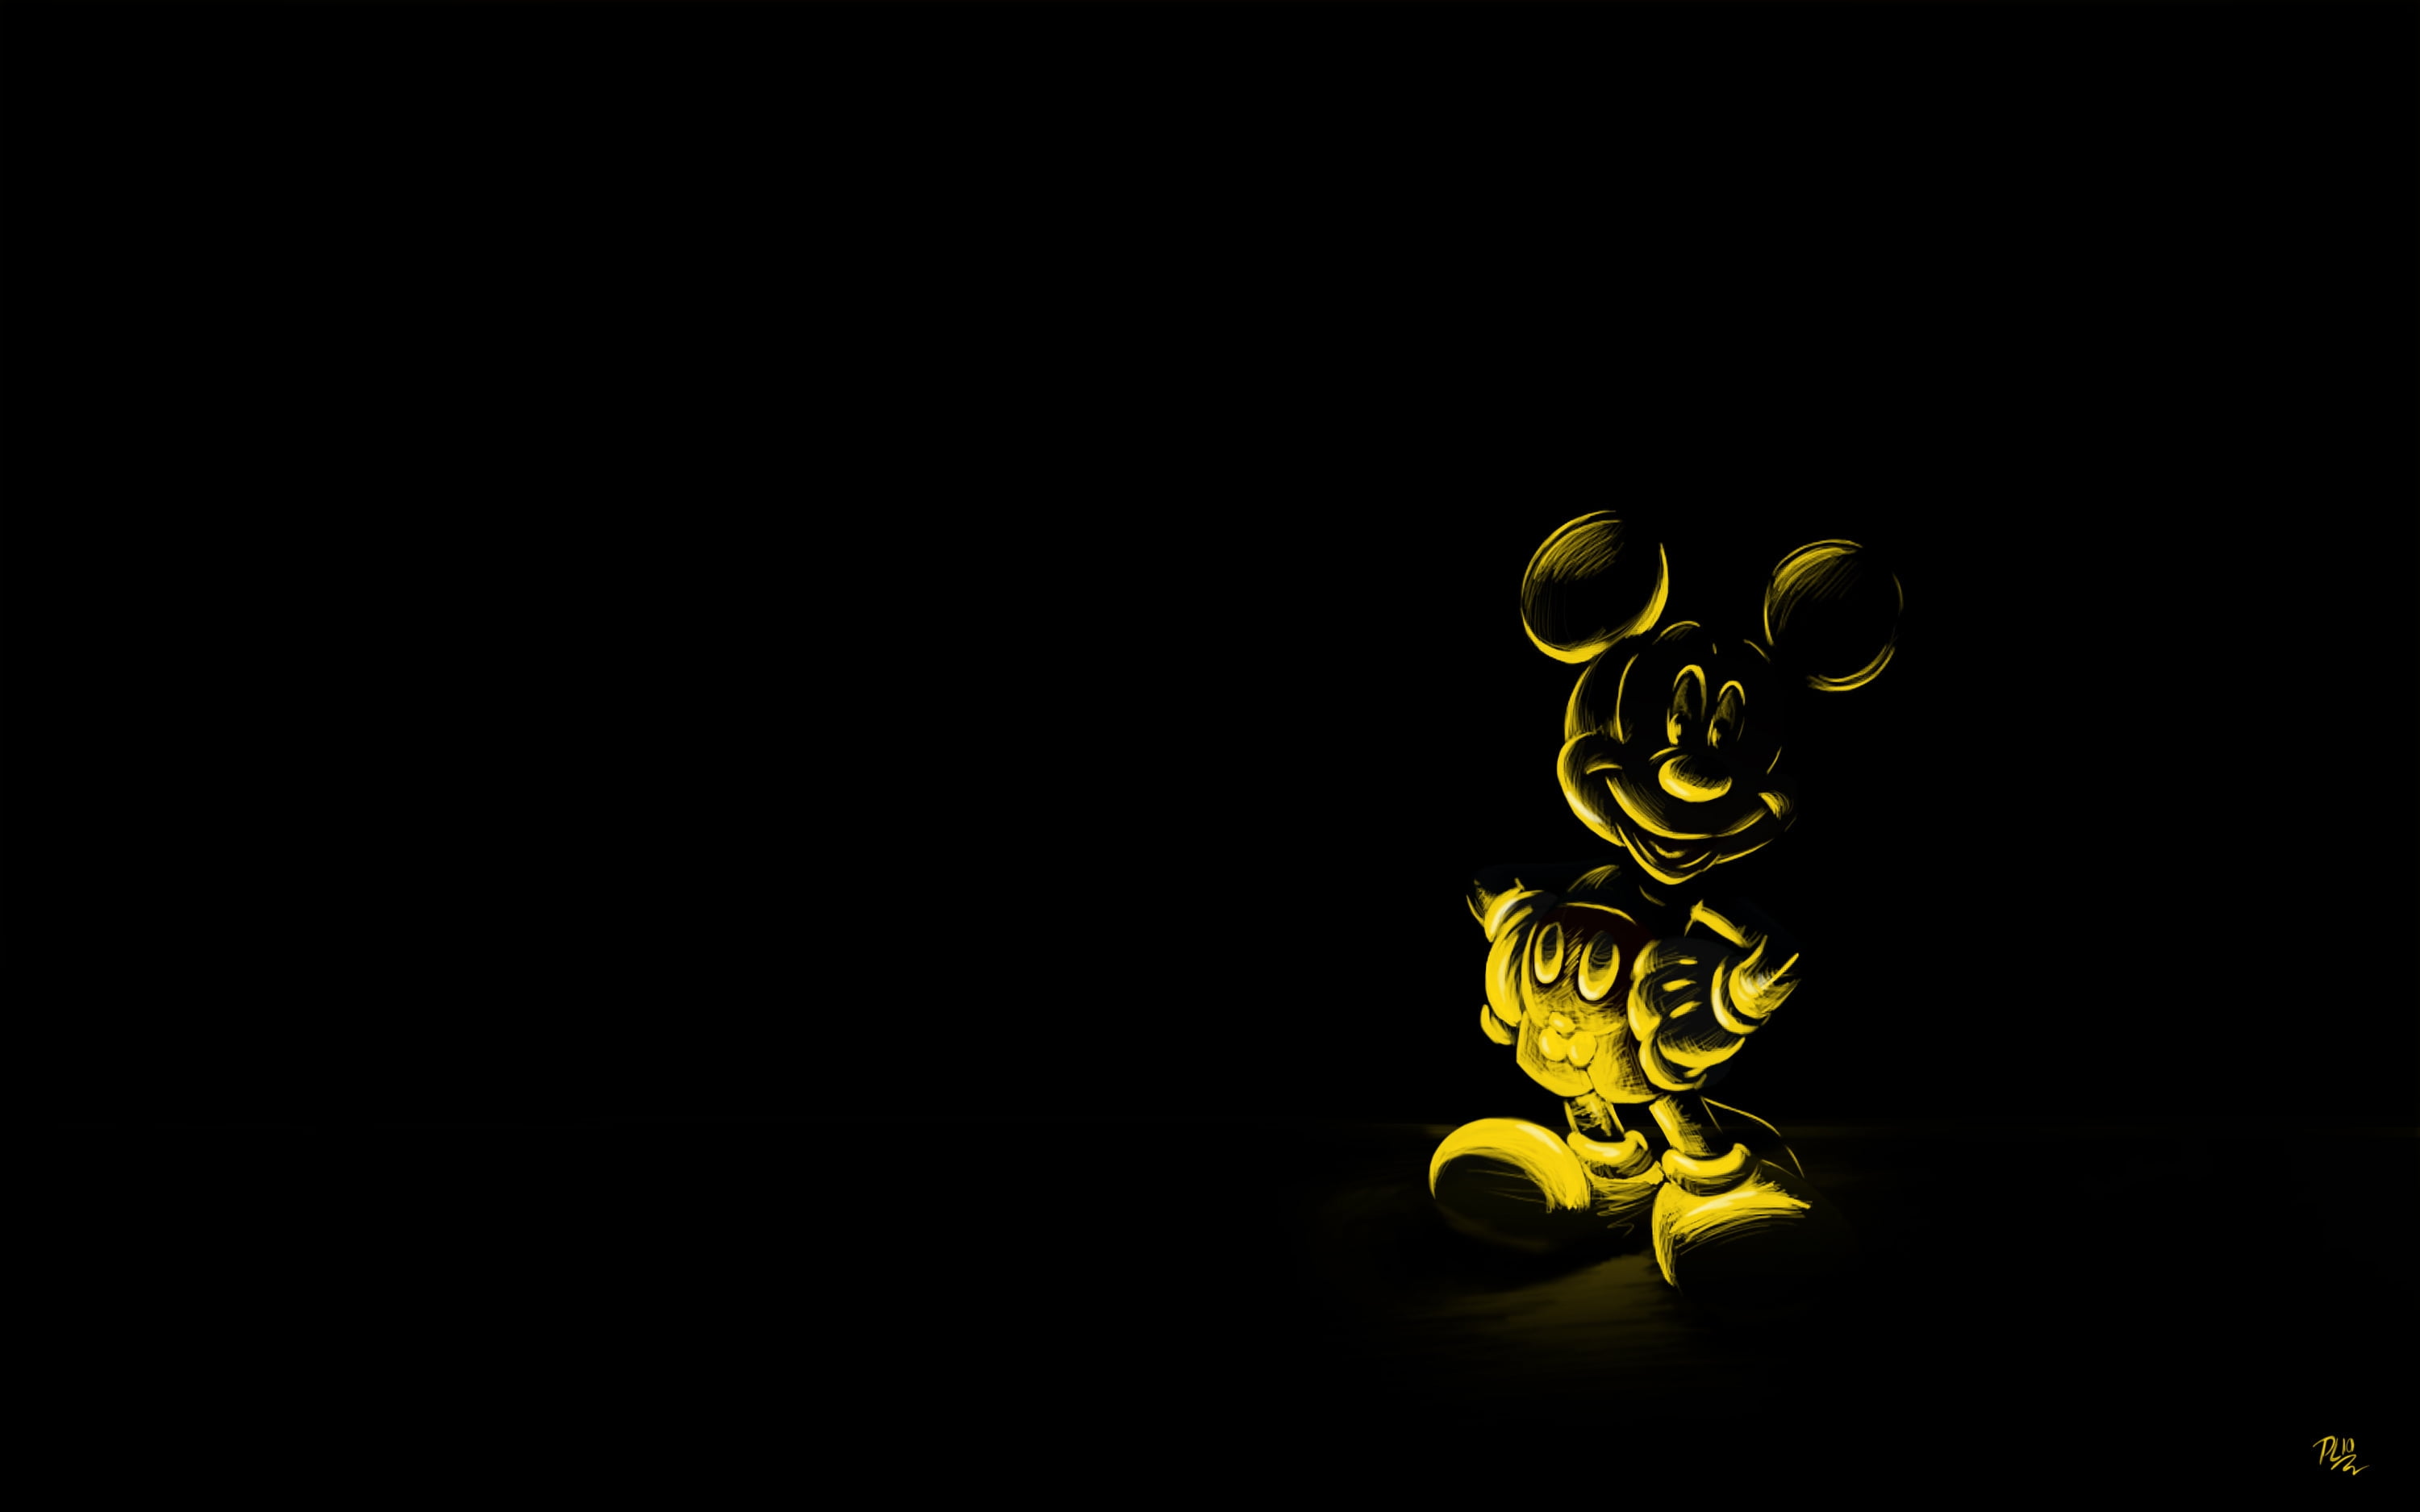 미키 마우스 벽지,검정,노랑,매크로 사진,어둠,폰트